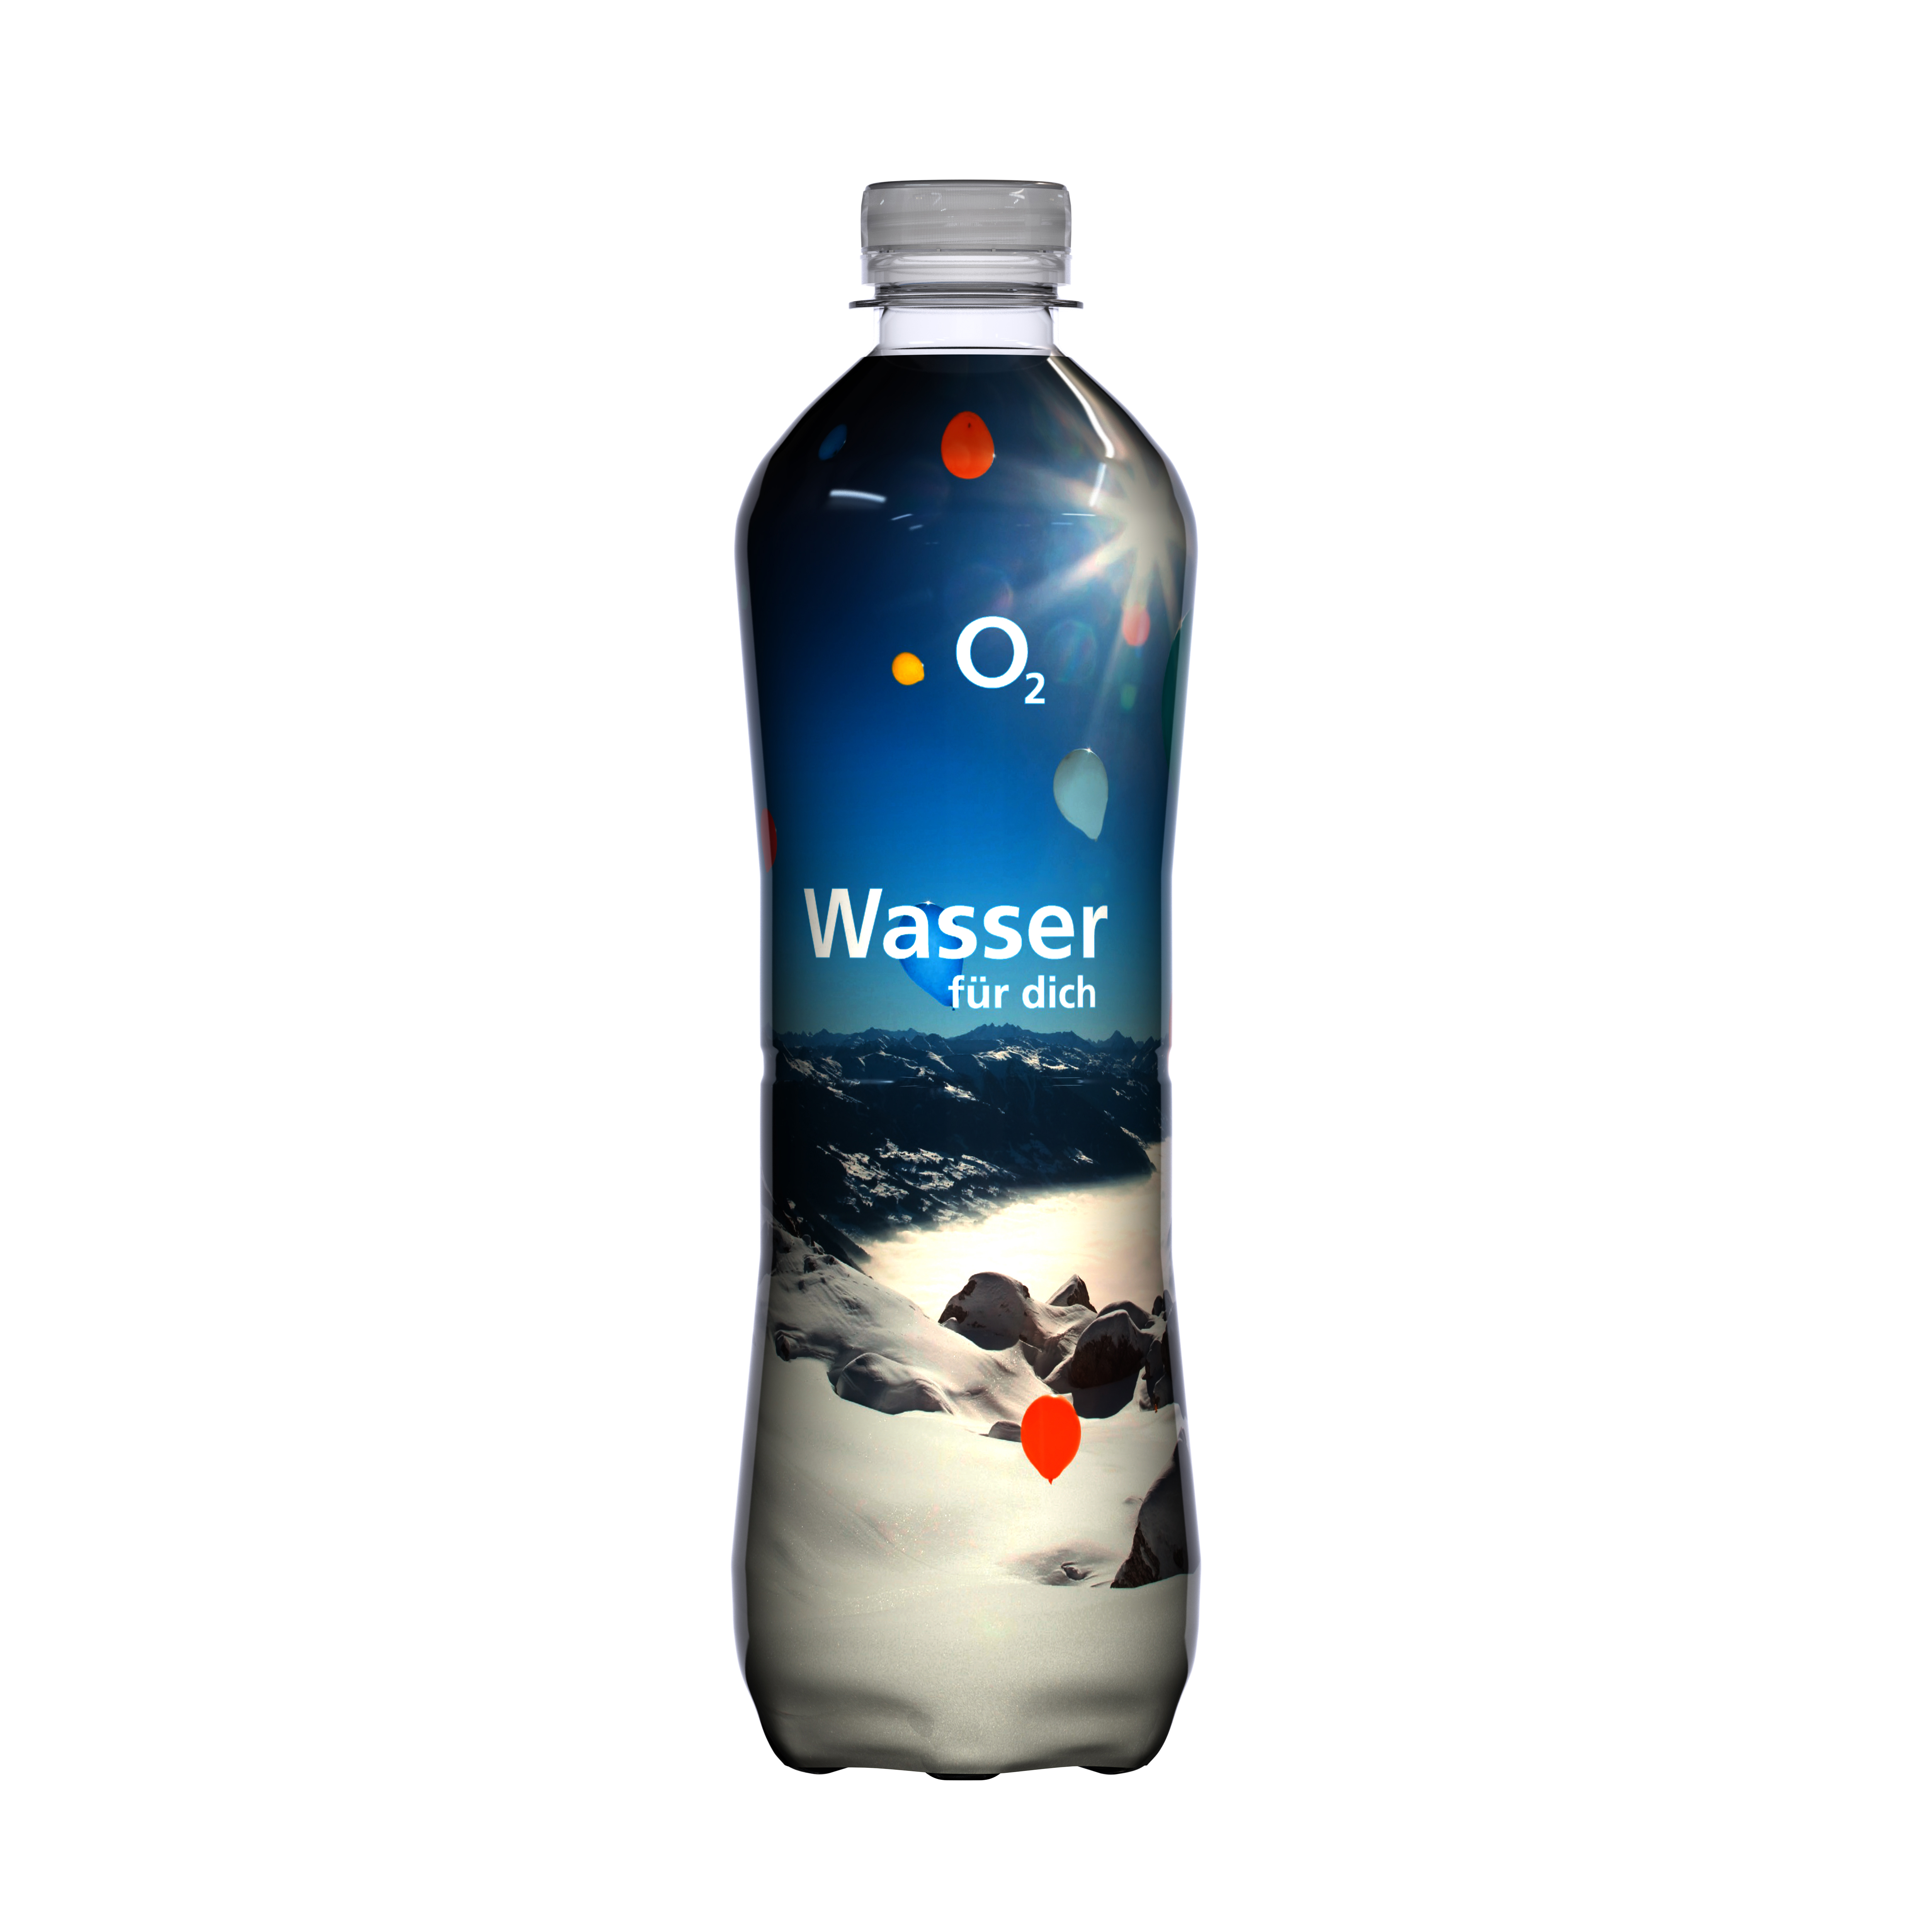 500 ml Mineralwasser spritzig (Flasche Slimline) - Fullbody Sleeve